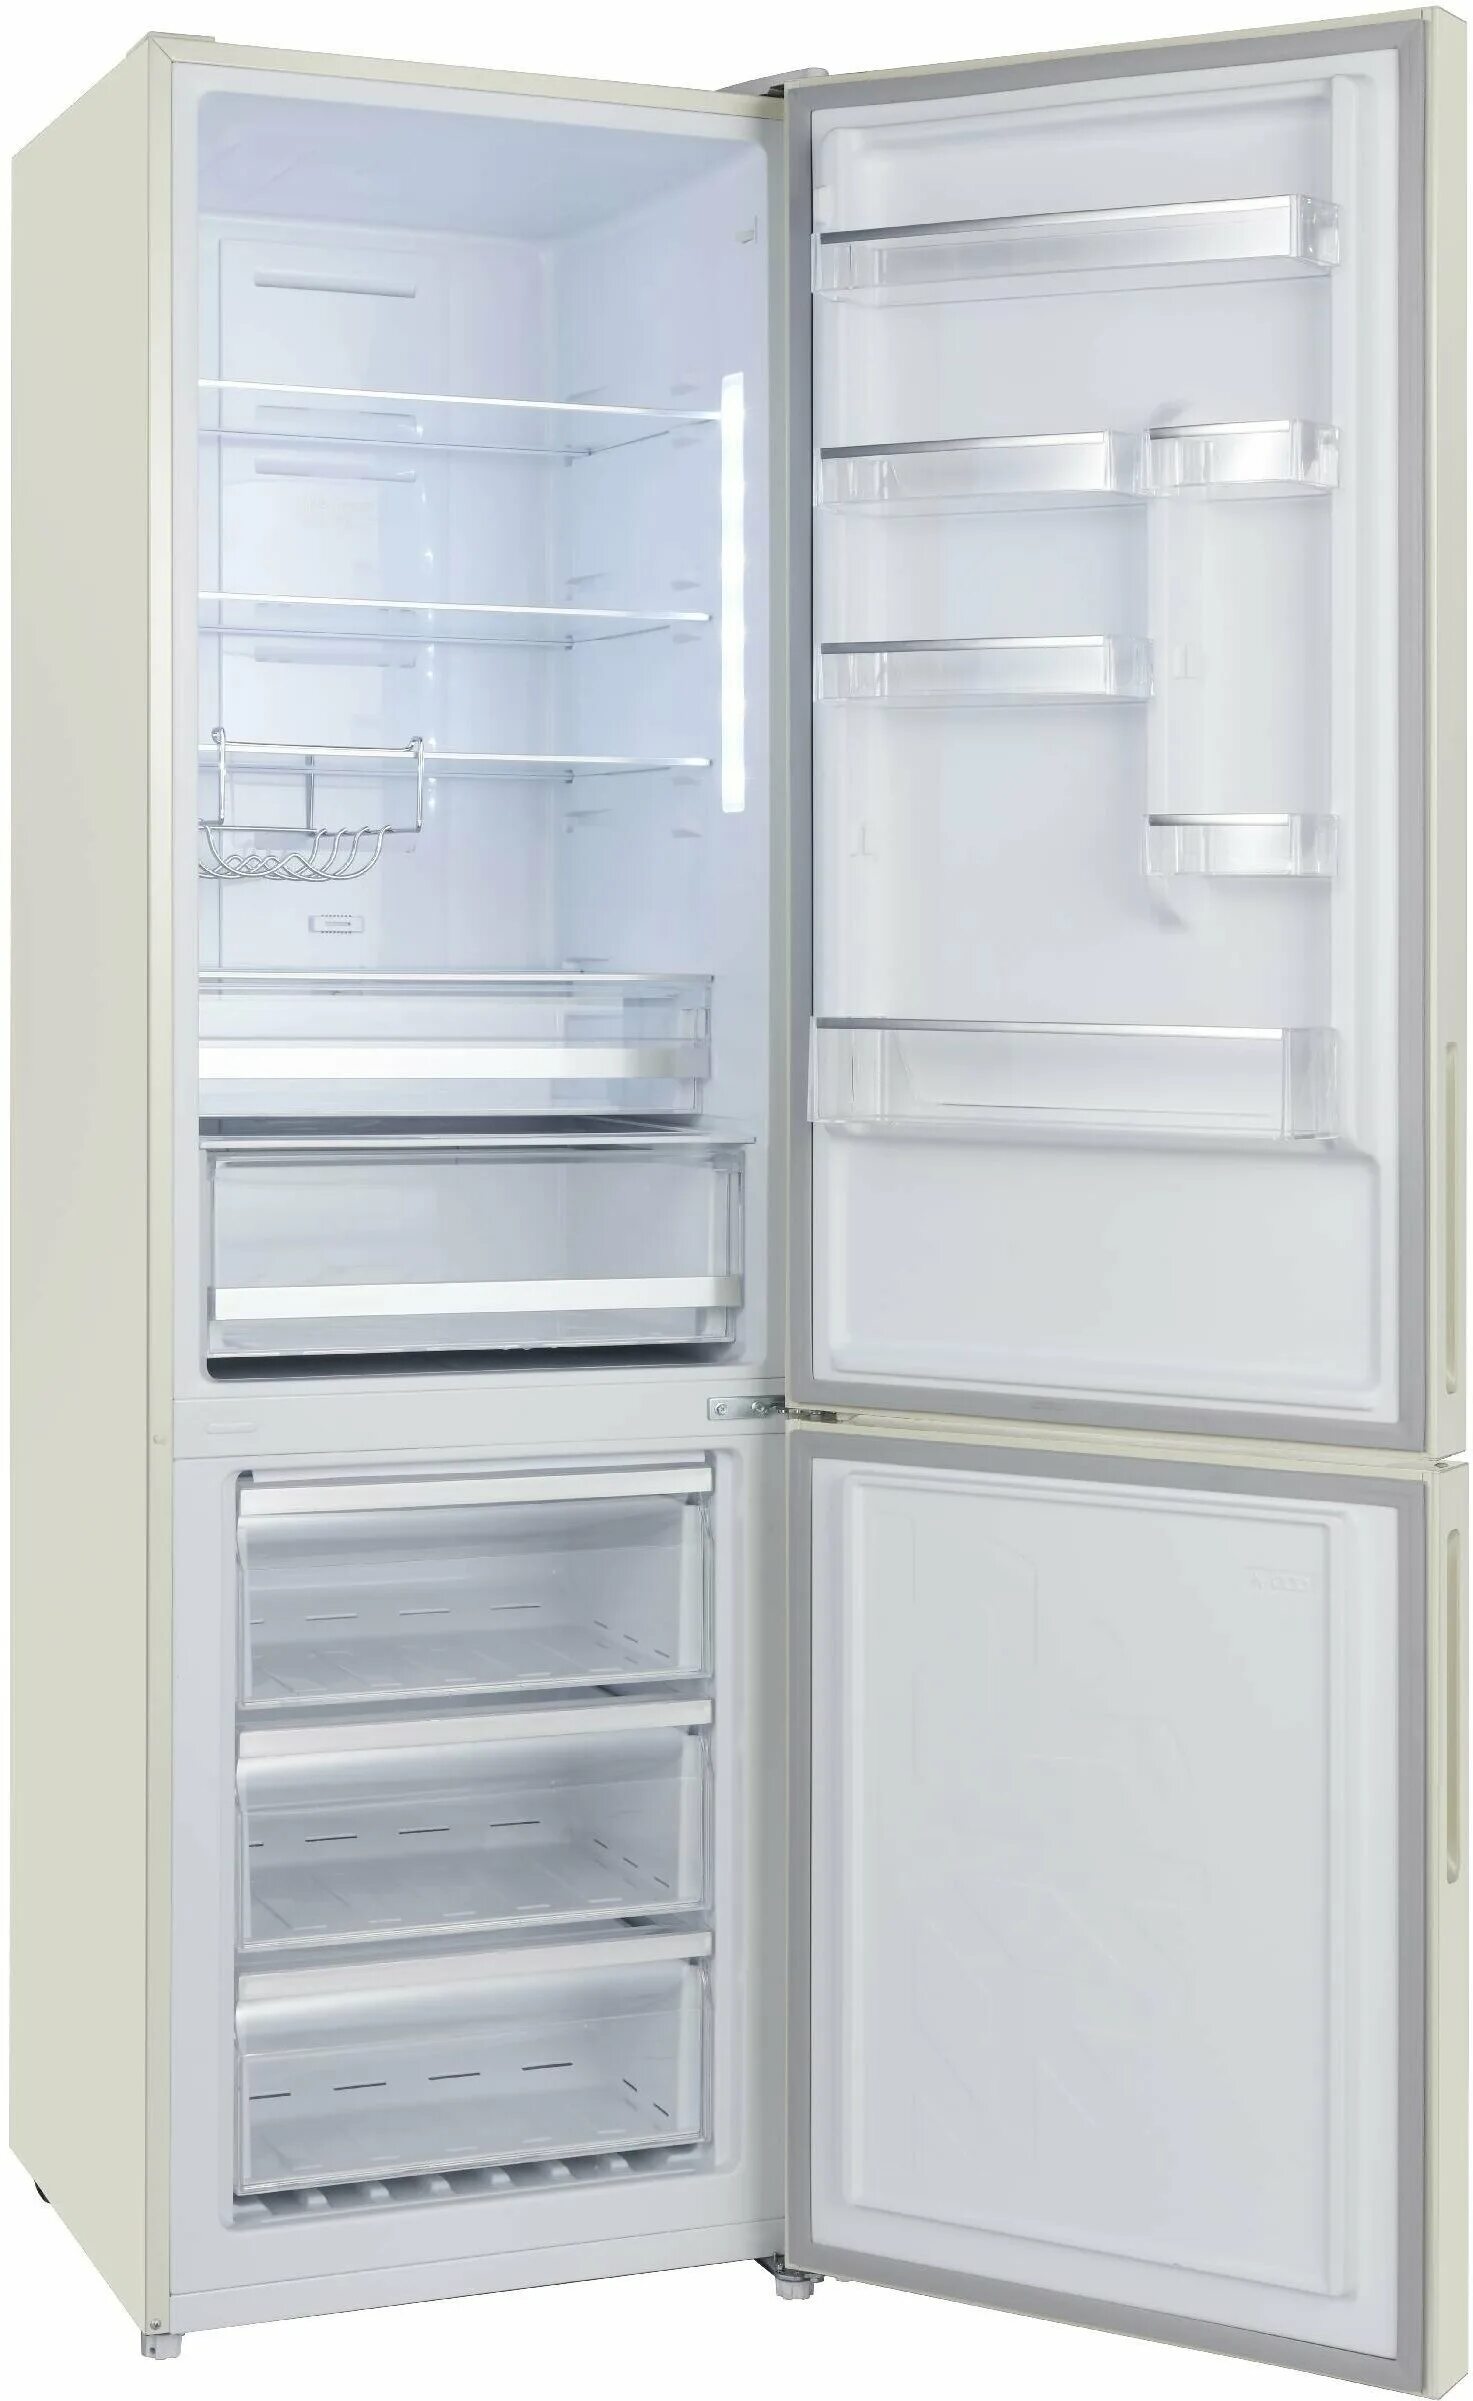 Холодильник Бирюса 880nf. Холодильник Бирюса 880nf, белый. Холодильник Бирюса-139 белый. Холодильник Бирюса b-880nf. Бирюса омск купить